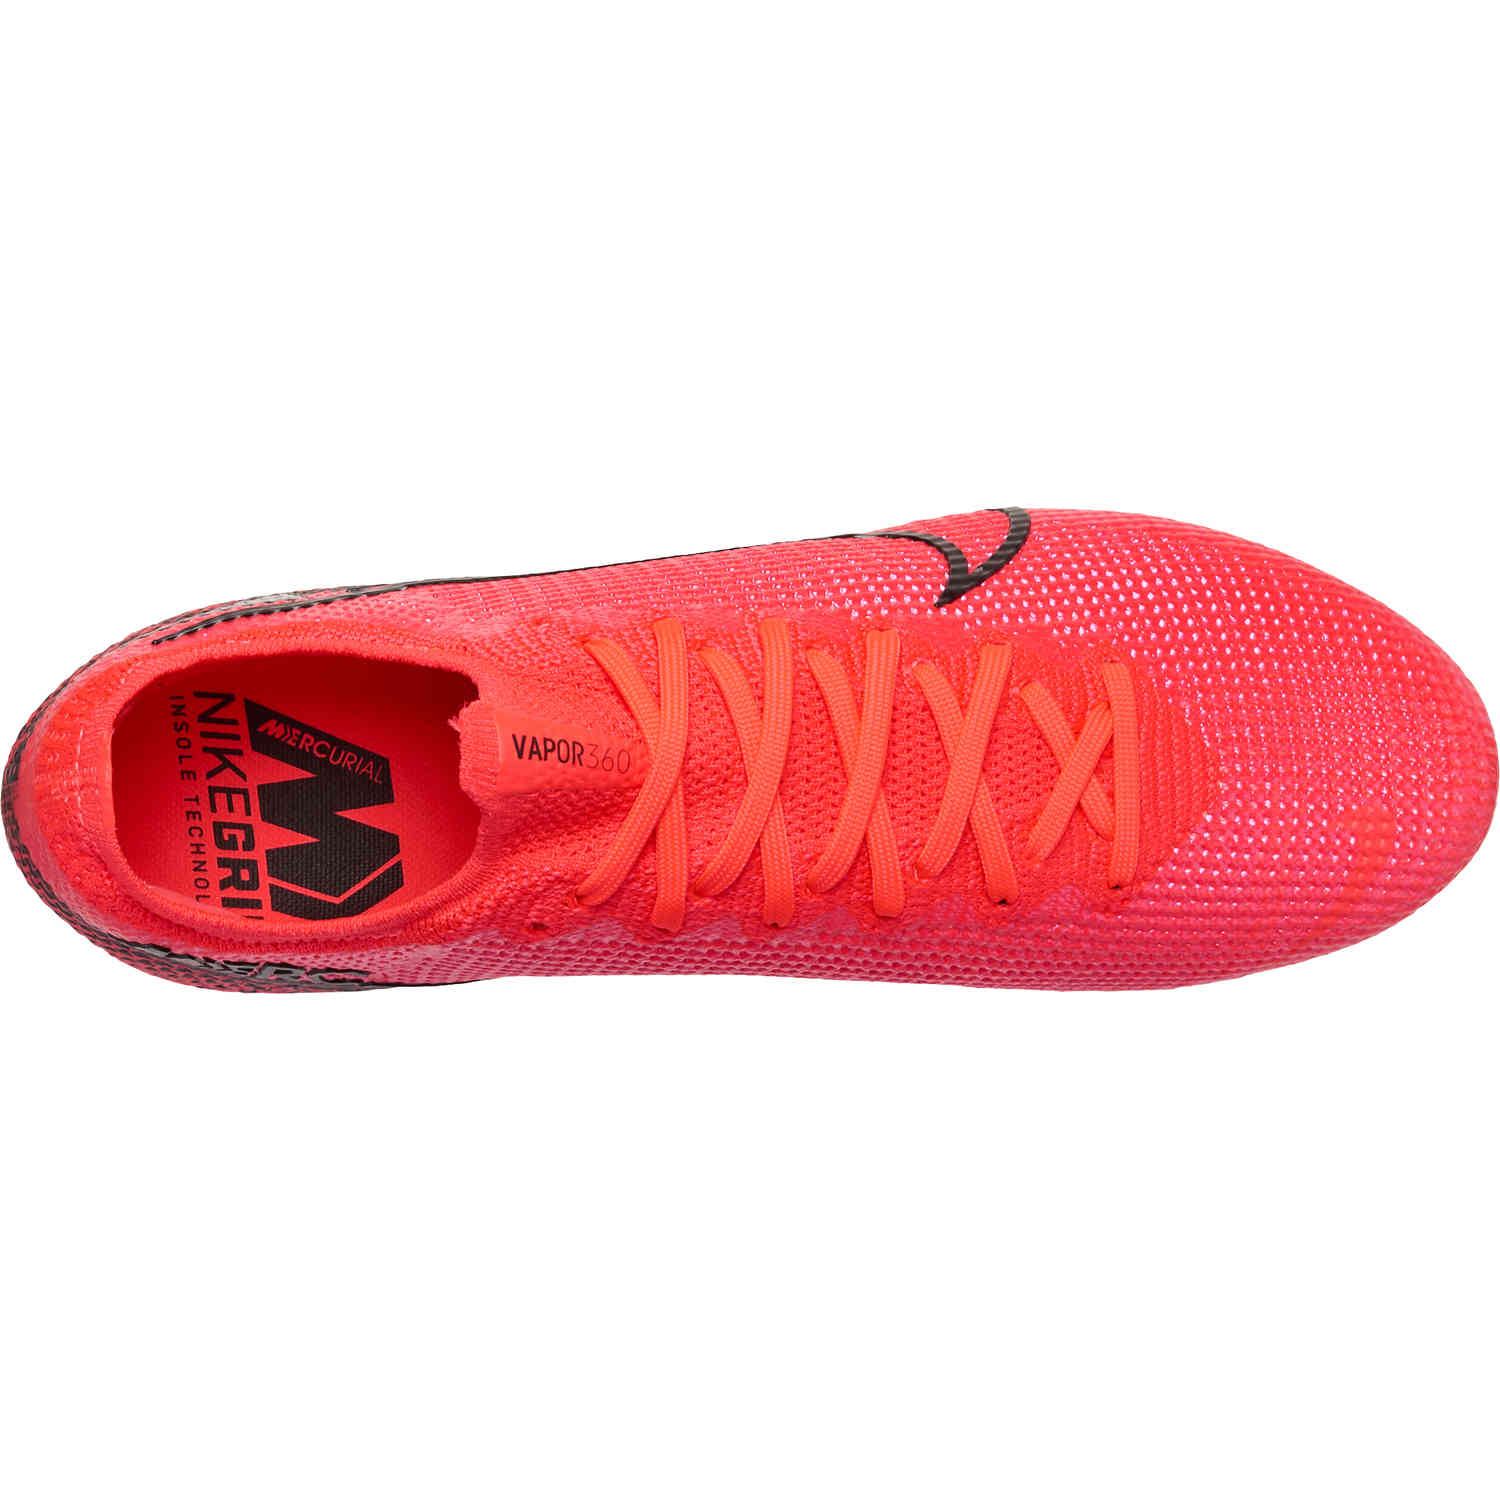 Nike Mercurial Vapor 13 Elite FG - Flash Crimson Pack - SoccerPro